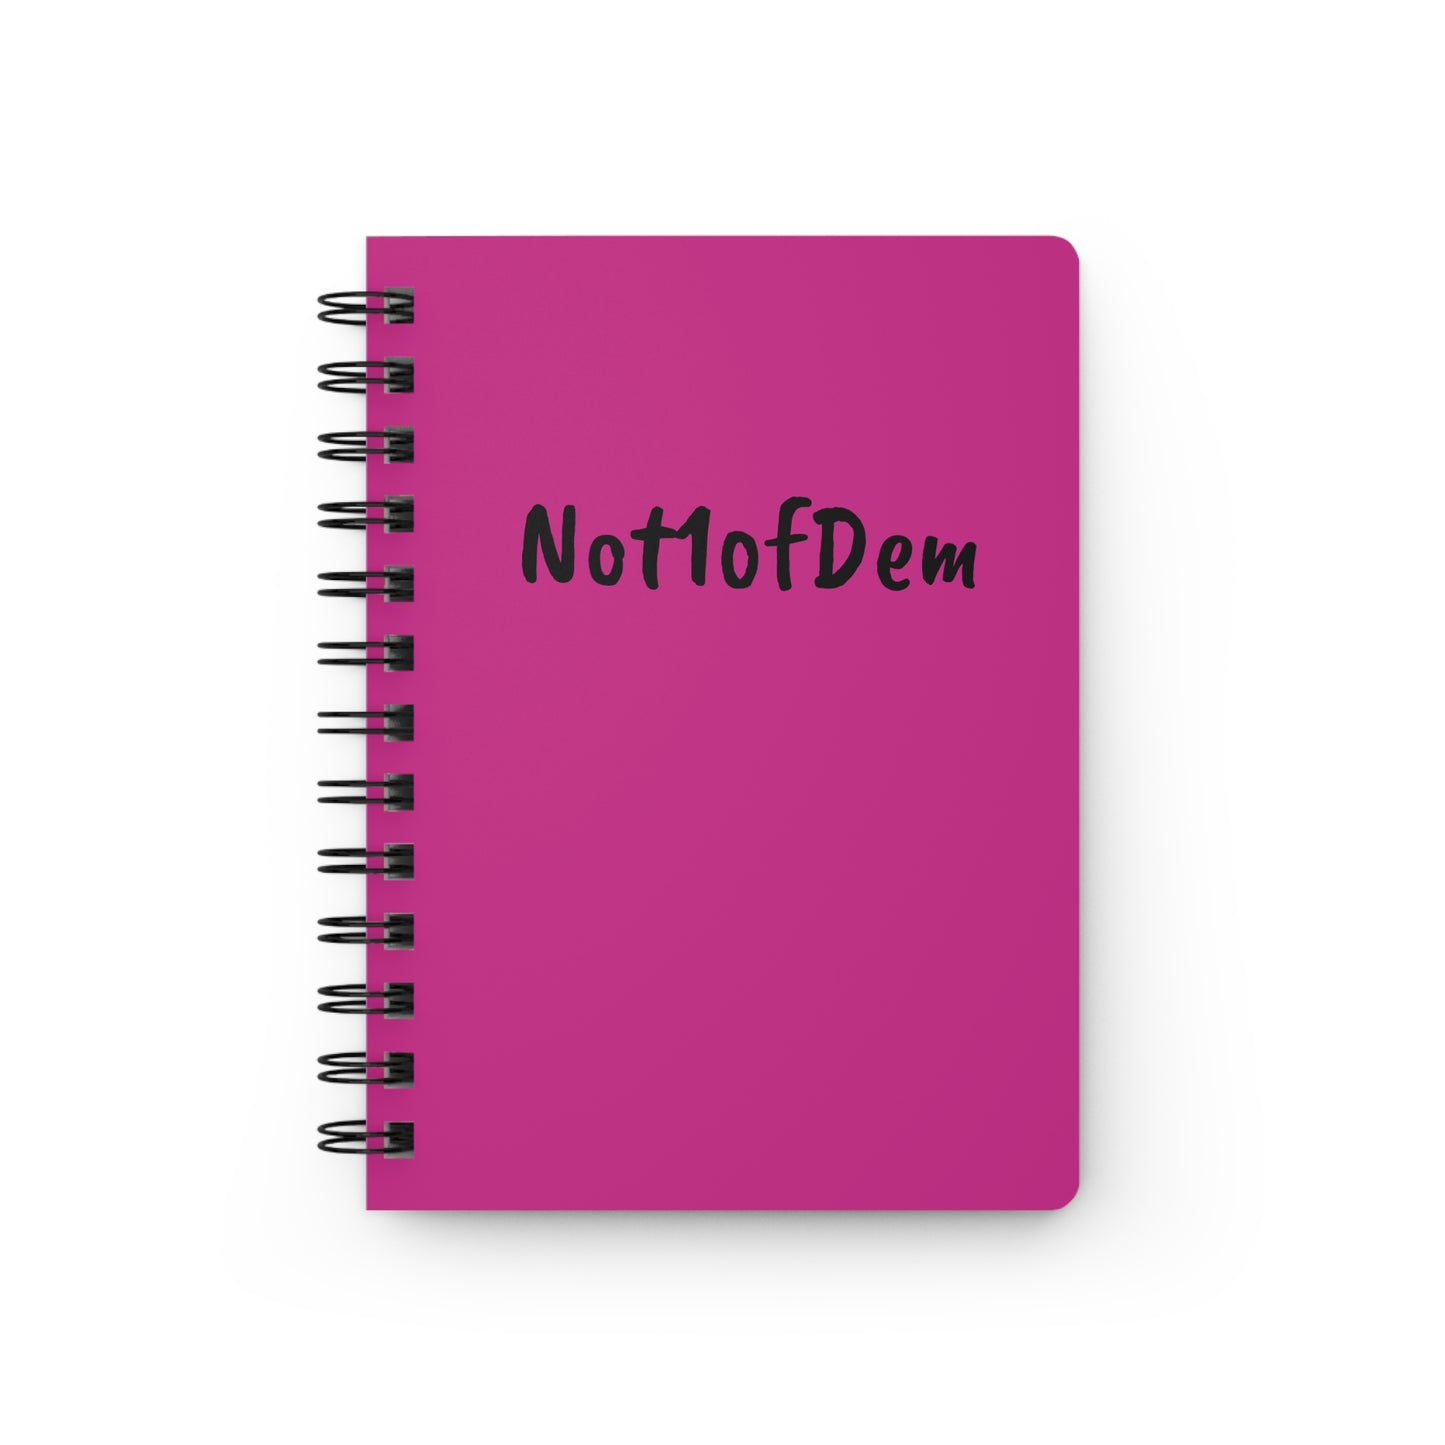 Not1ofDem Journal